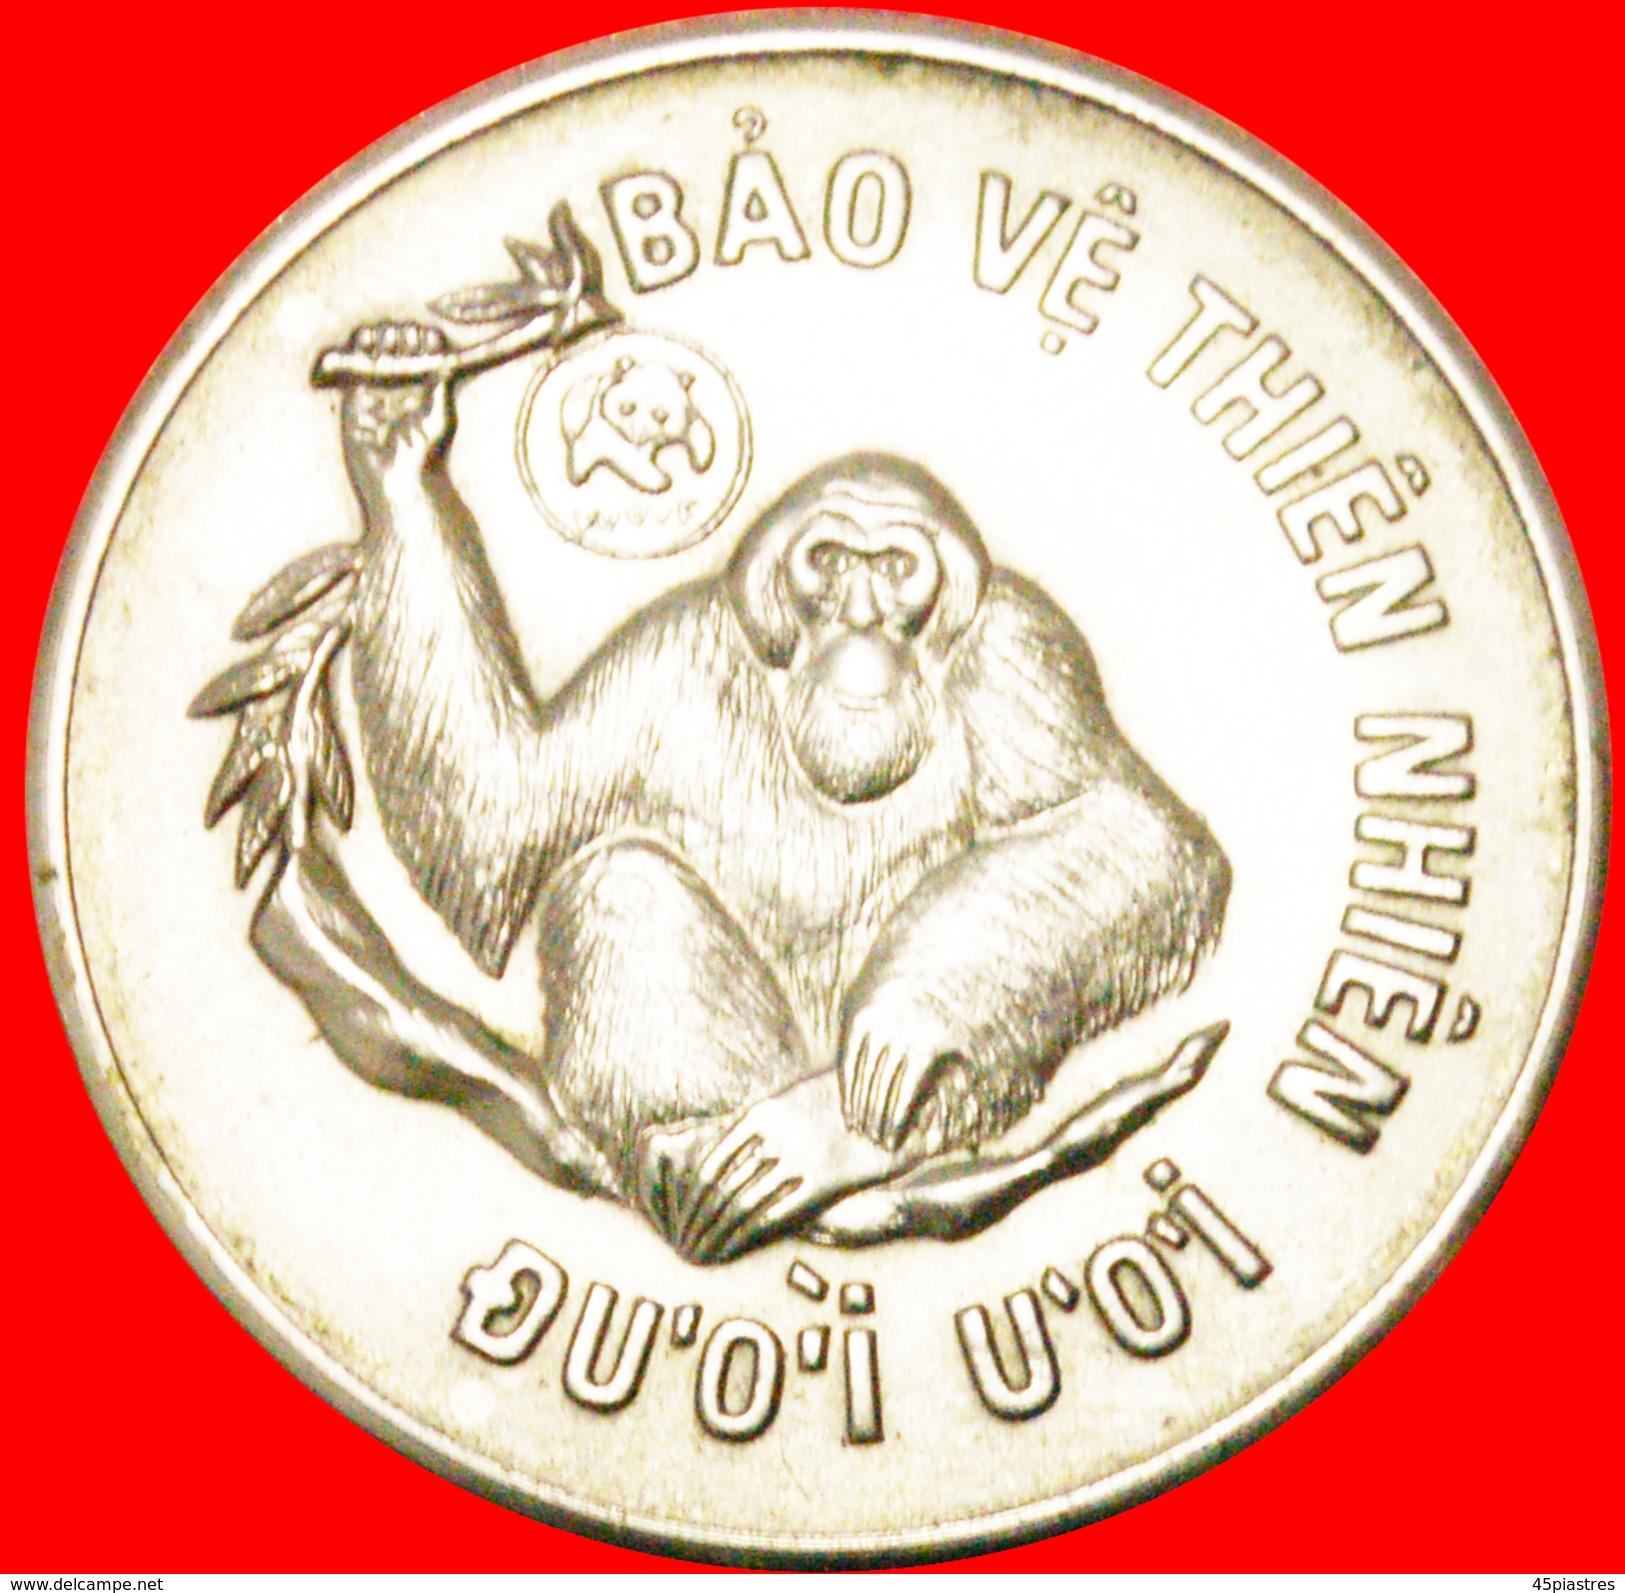 § ORANGUTAN: VIETNAM &#x2605; 10 DONG 1997! LOW START&#x2605; NO RESERVE! - Vietnam